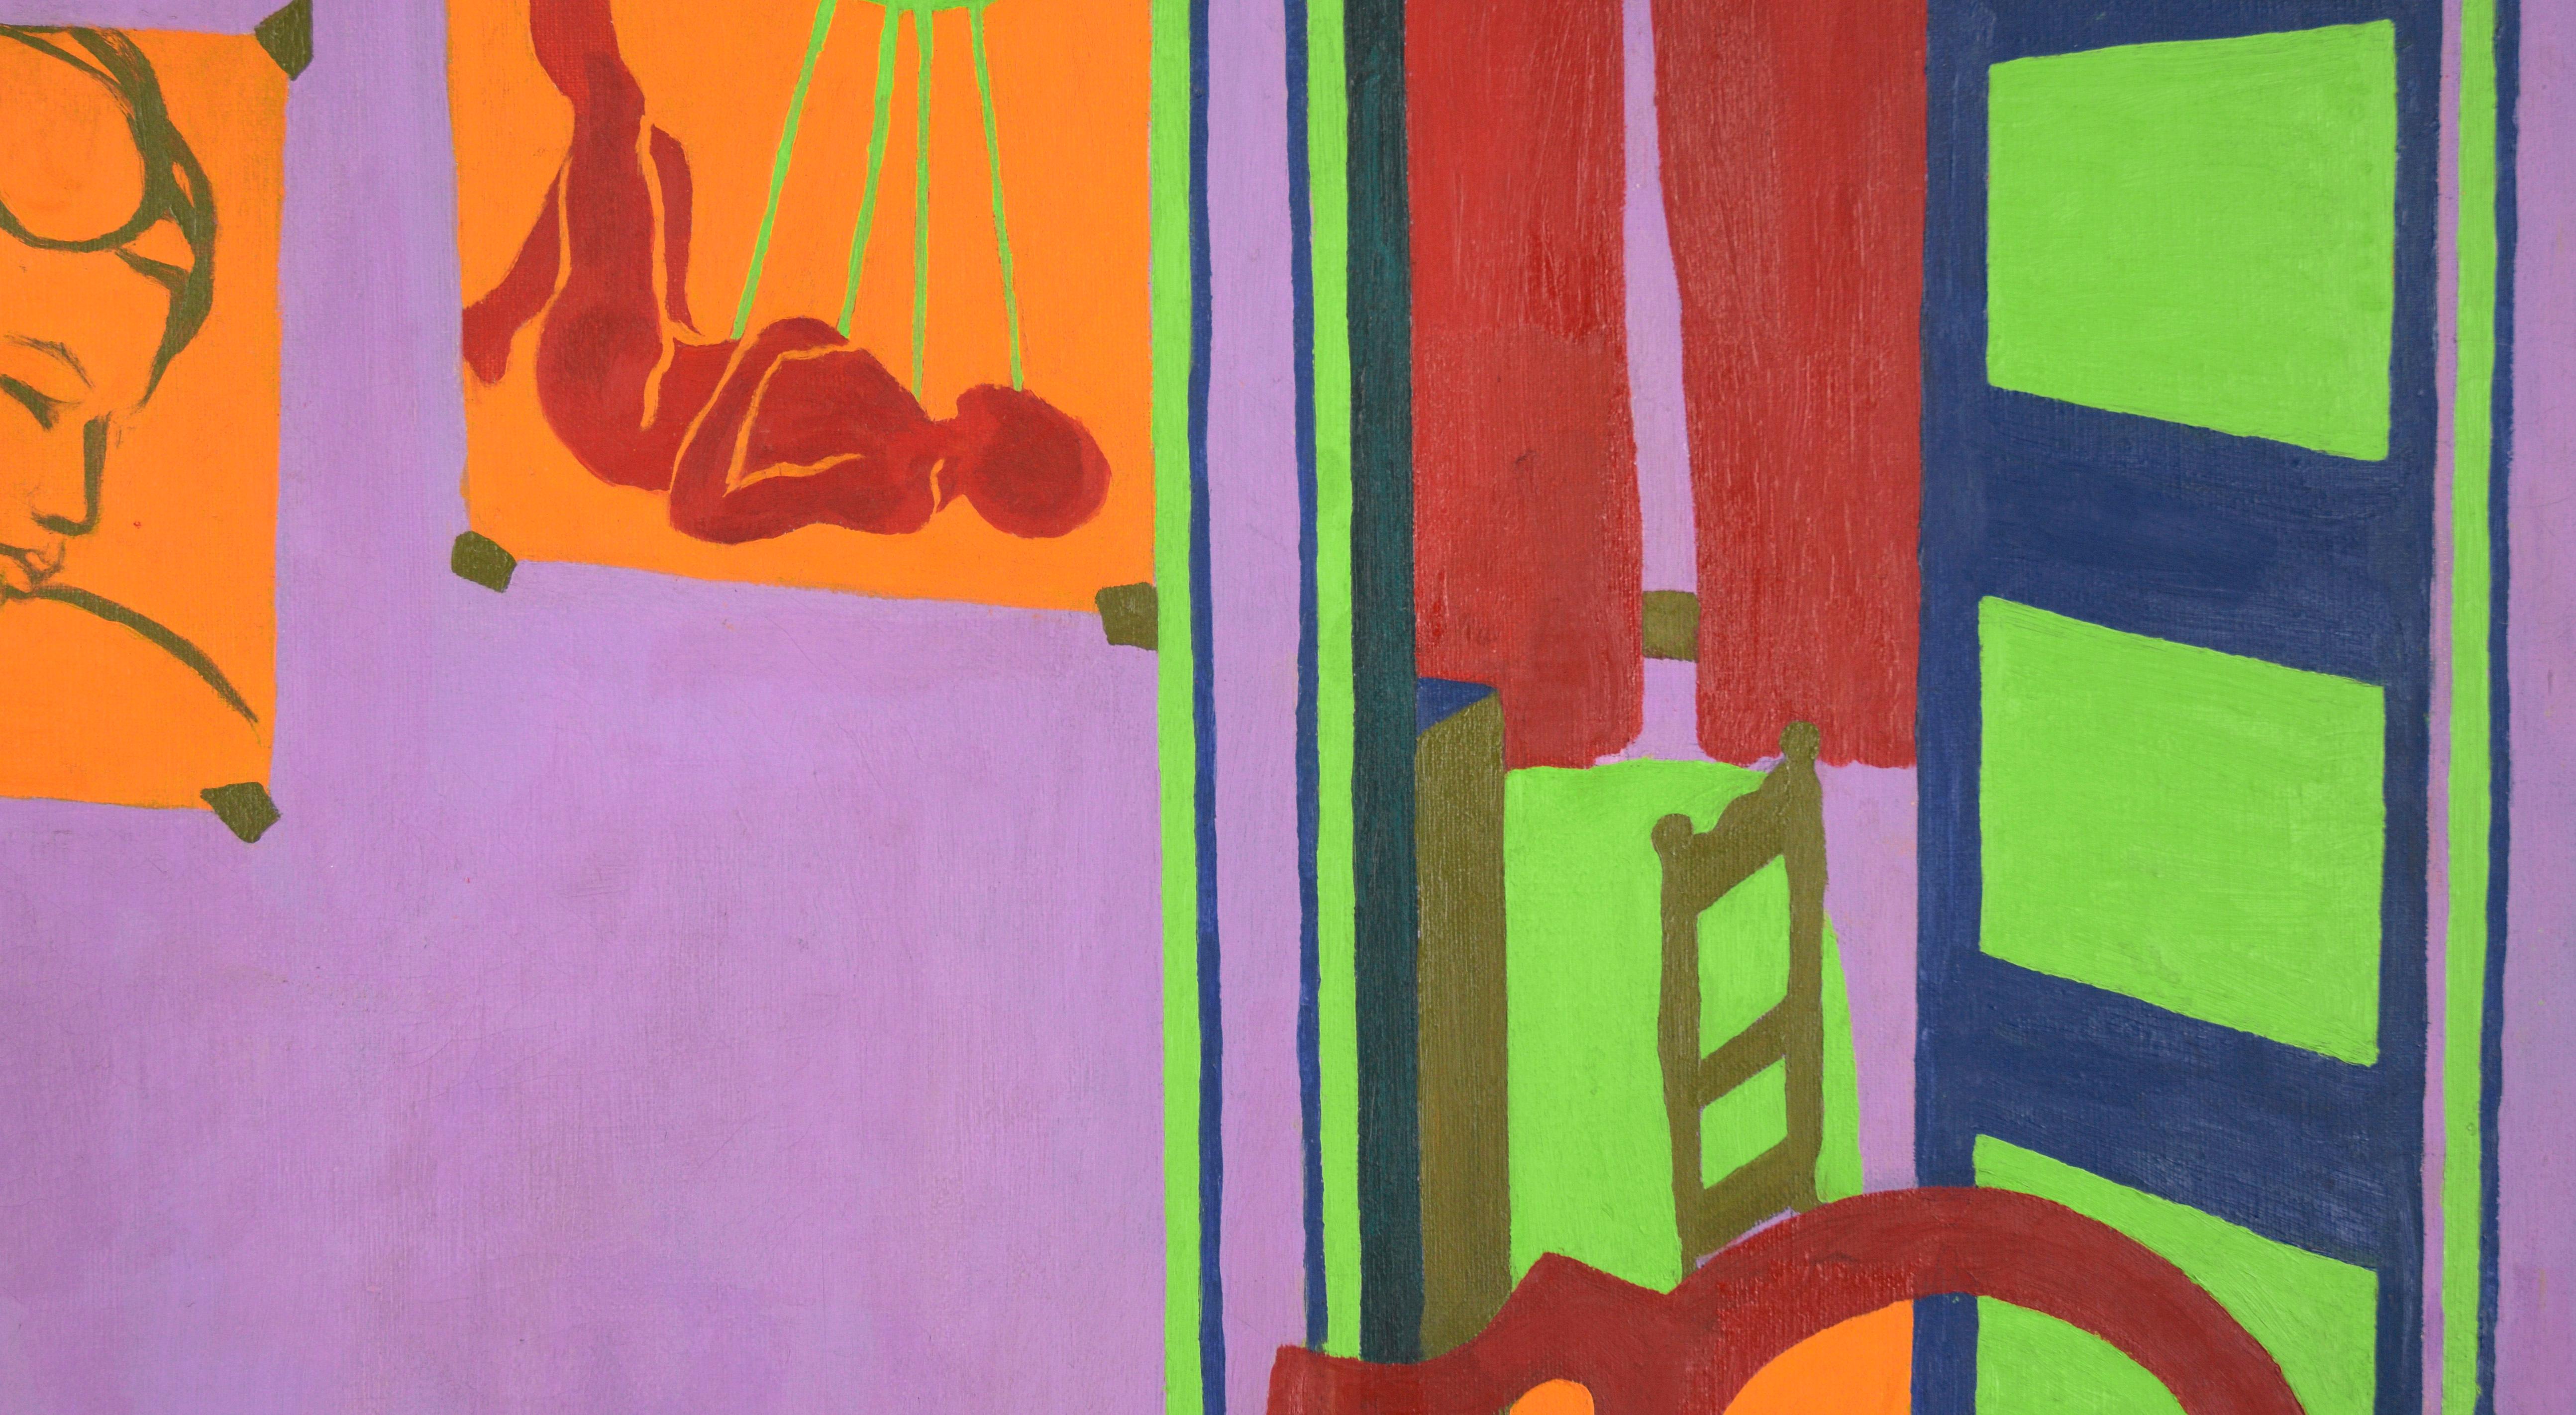 Die Wohnung des Künstlers Mitte des Jahrhunderts Fauvist Innenszene Original Öl auf Leinwand

Lebhafte Innenraumszene der Künstlerin Frances Rinaldo (Amerikanerin, geb. 1943) aus Santa Cruz, Kalifornien. In einem farbenfrohen Raum stehen ein Stuhl,